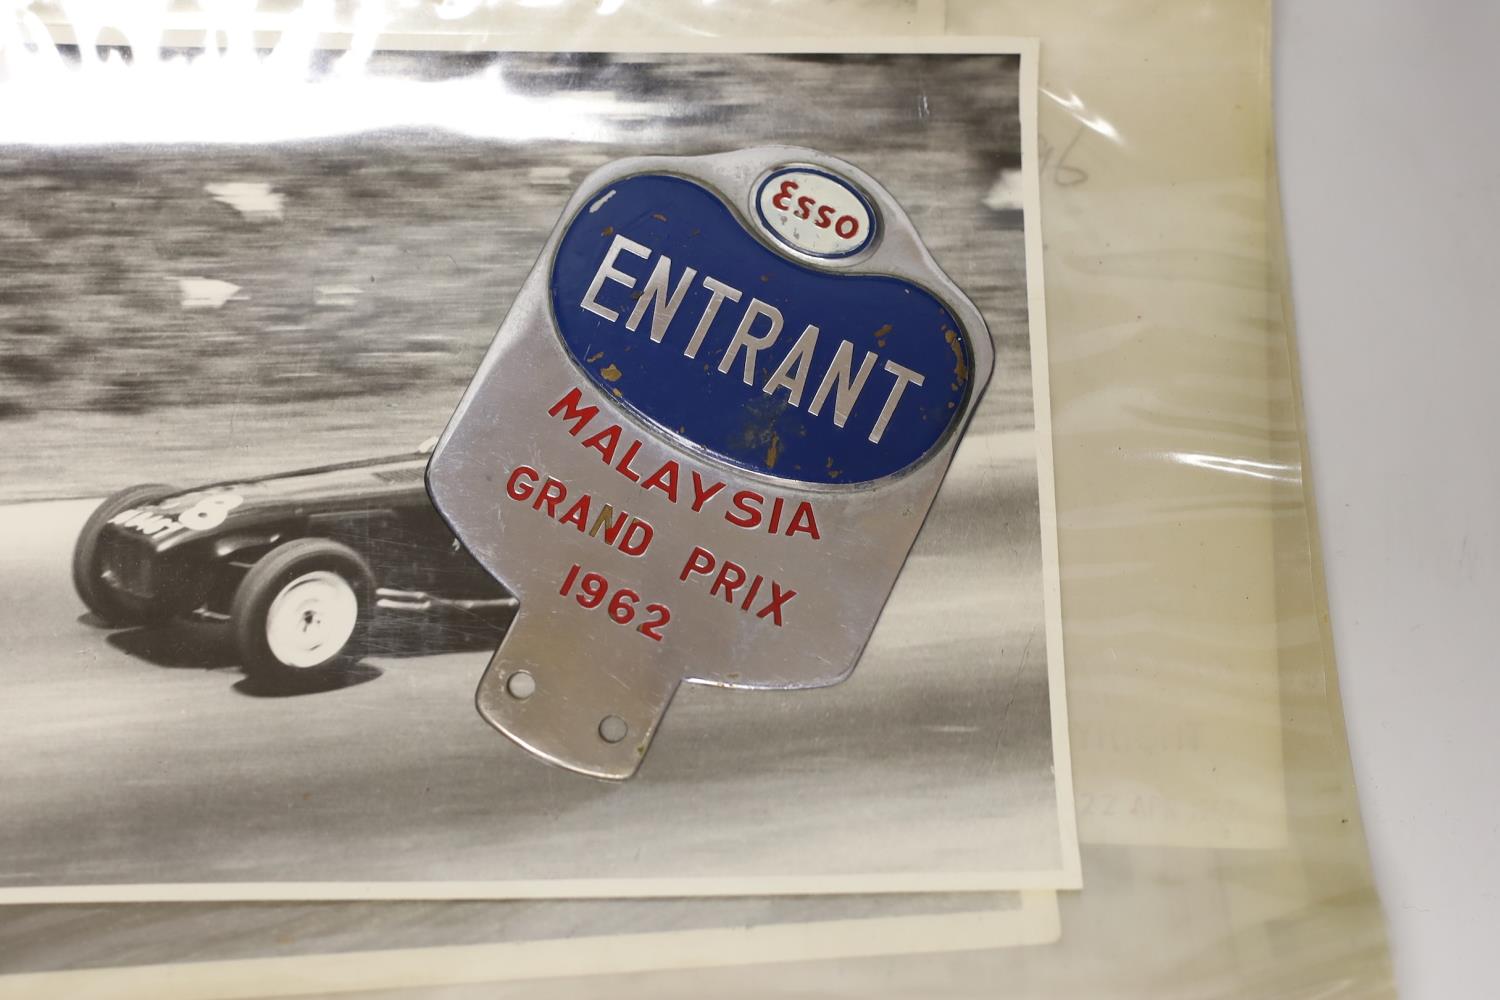 Automobilia- Loris Goring photos, Singapore, Thompson Road Grand Prix 1957-66, 1962 car badge etc - Image 2 of 5